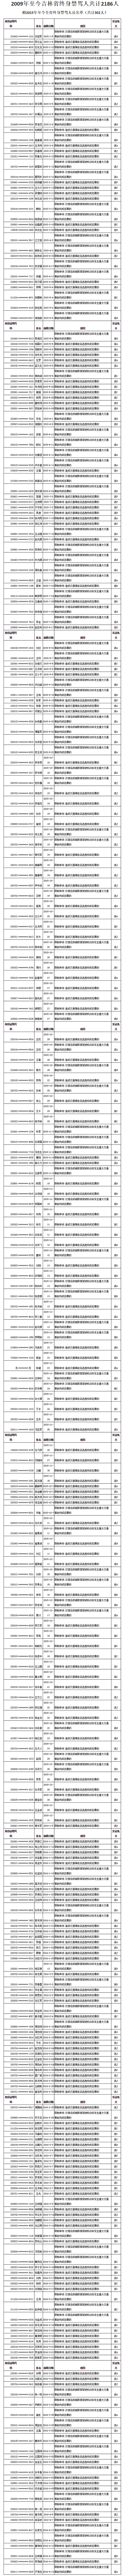 吉林省交警今年首次曝光终身禁驾人员名单